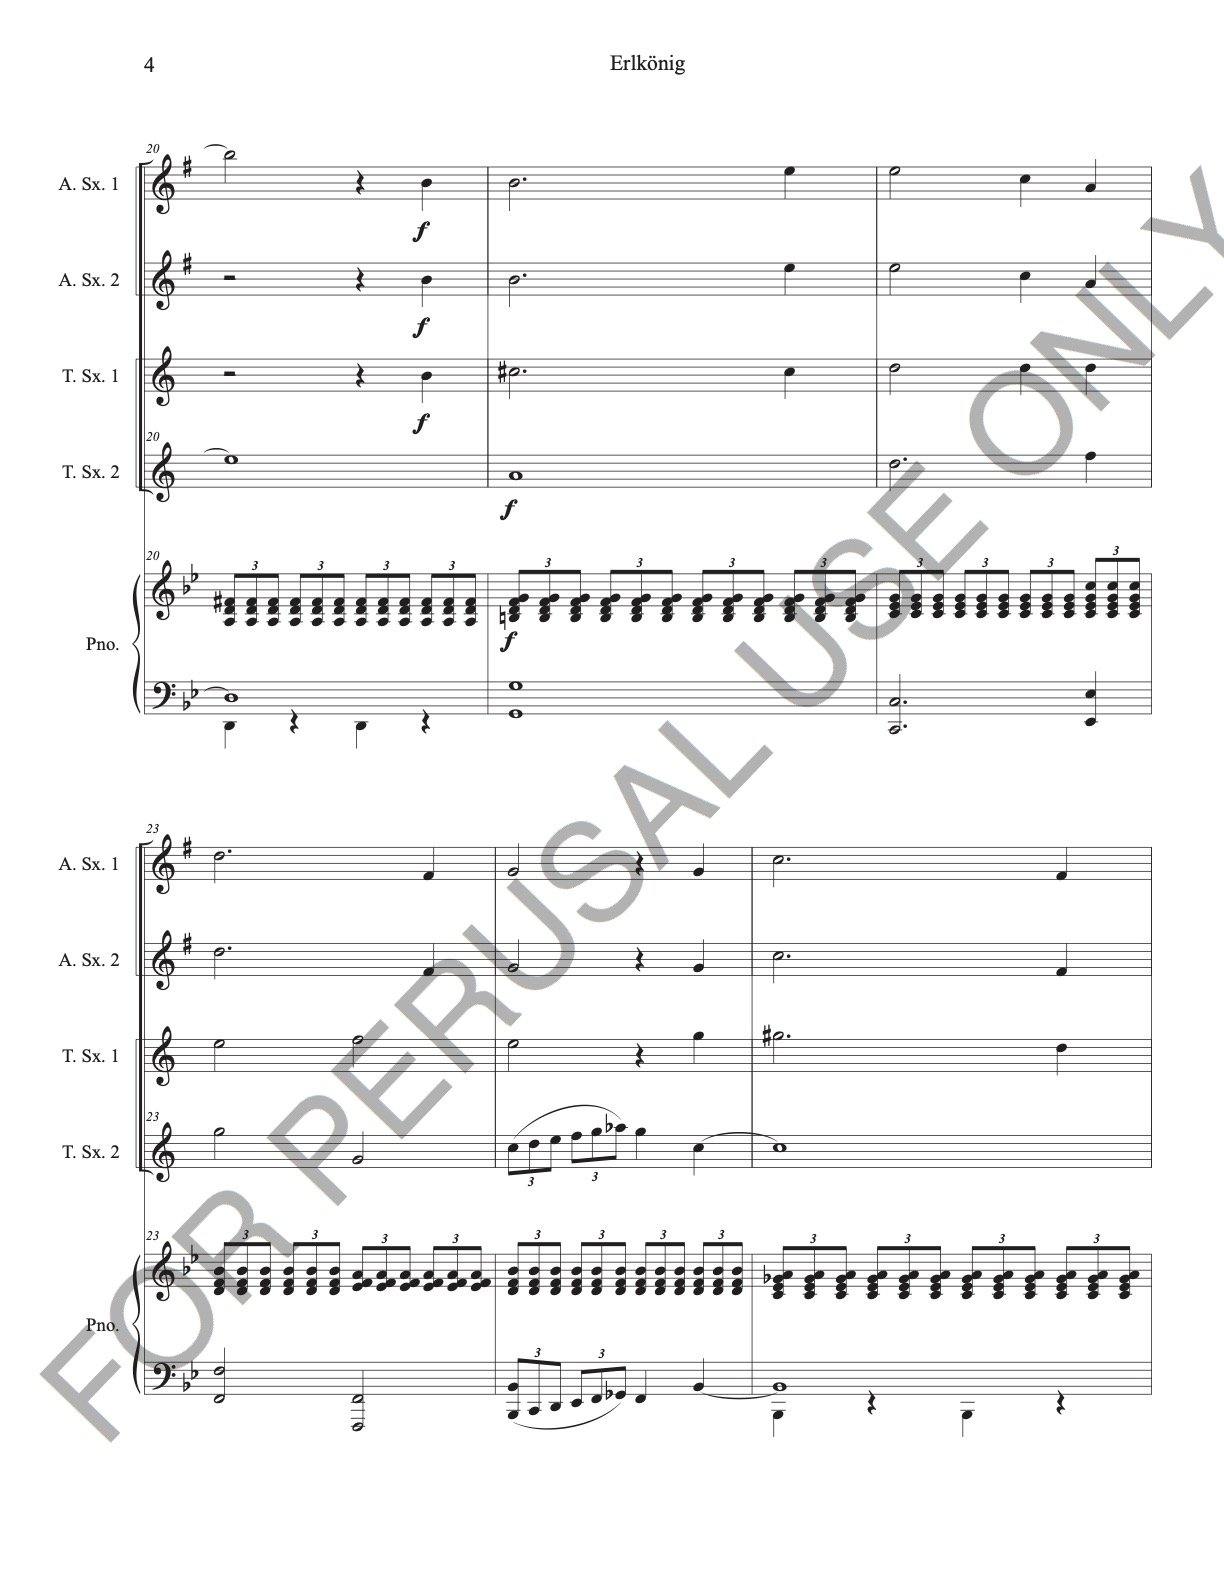 Erlkönig, Op.1 D328 by Franz Schubert for Saxophone Quartet (AATT) and Piano - ChaipruckMekara